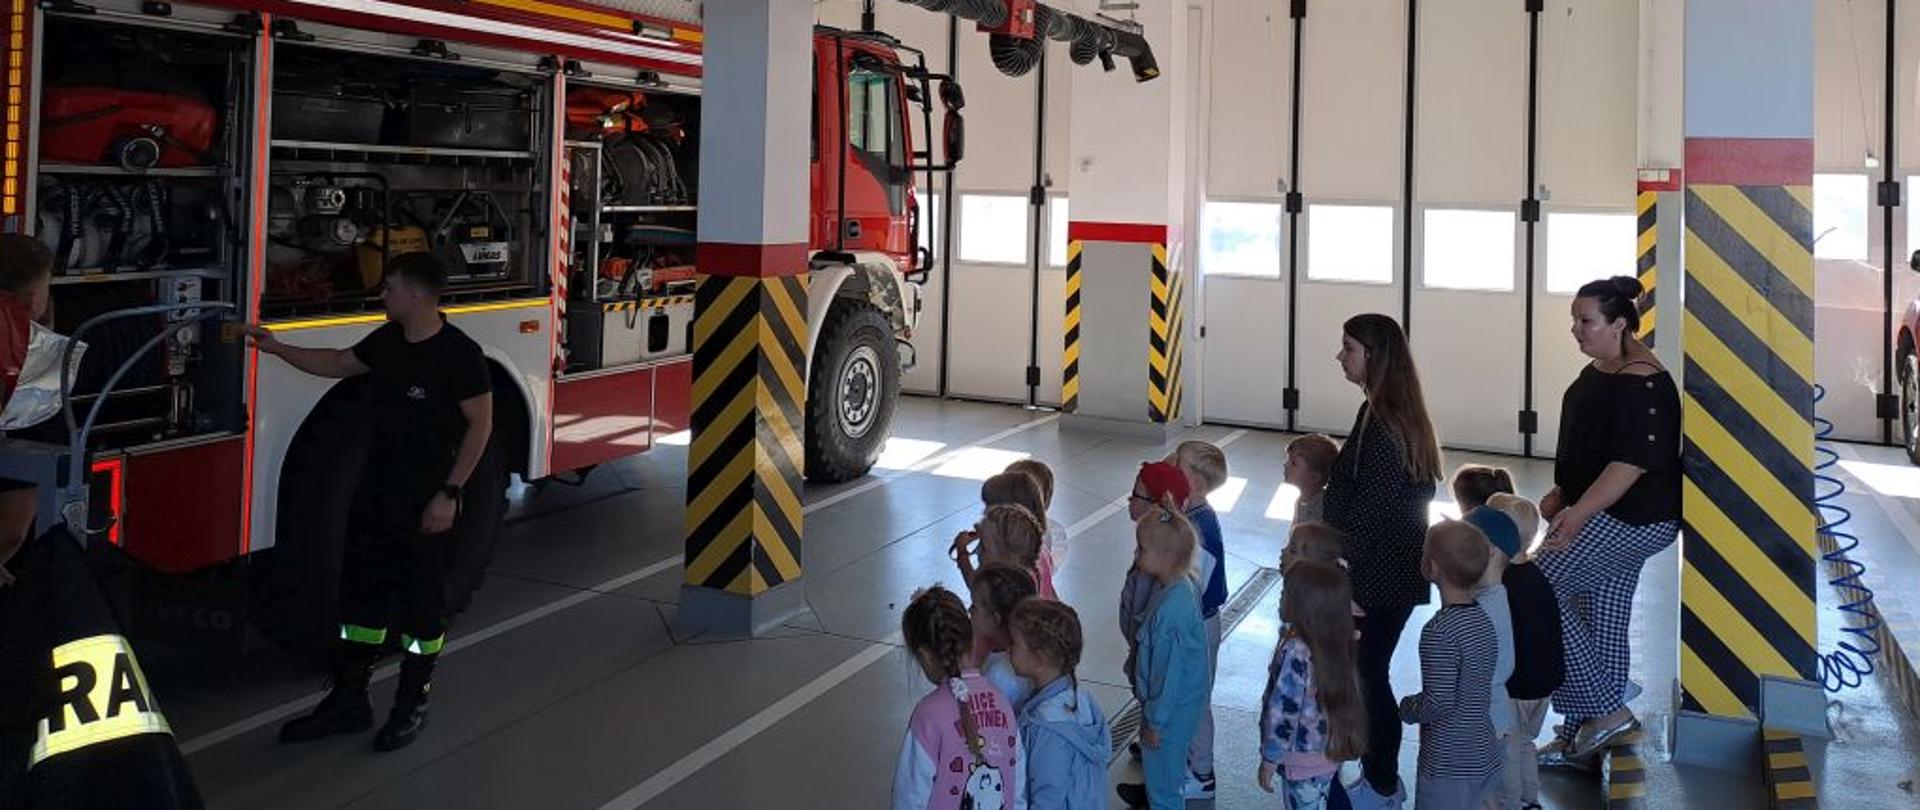 Na zdjęciu widać dzieci podczas wizyty w strażnicy Państwowej Straży Pożarnej.